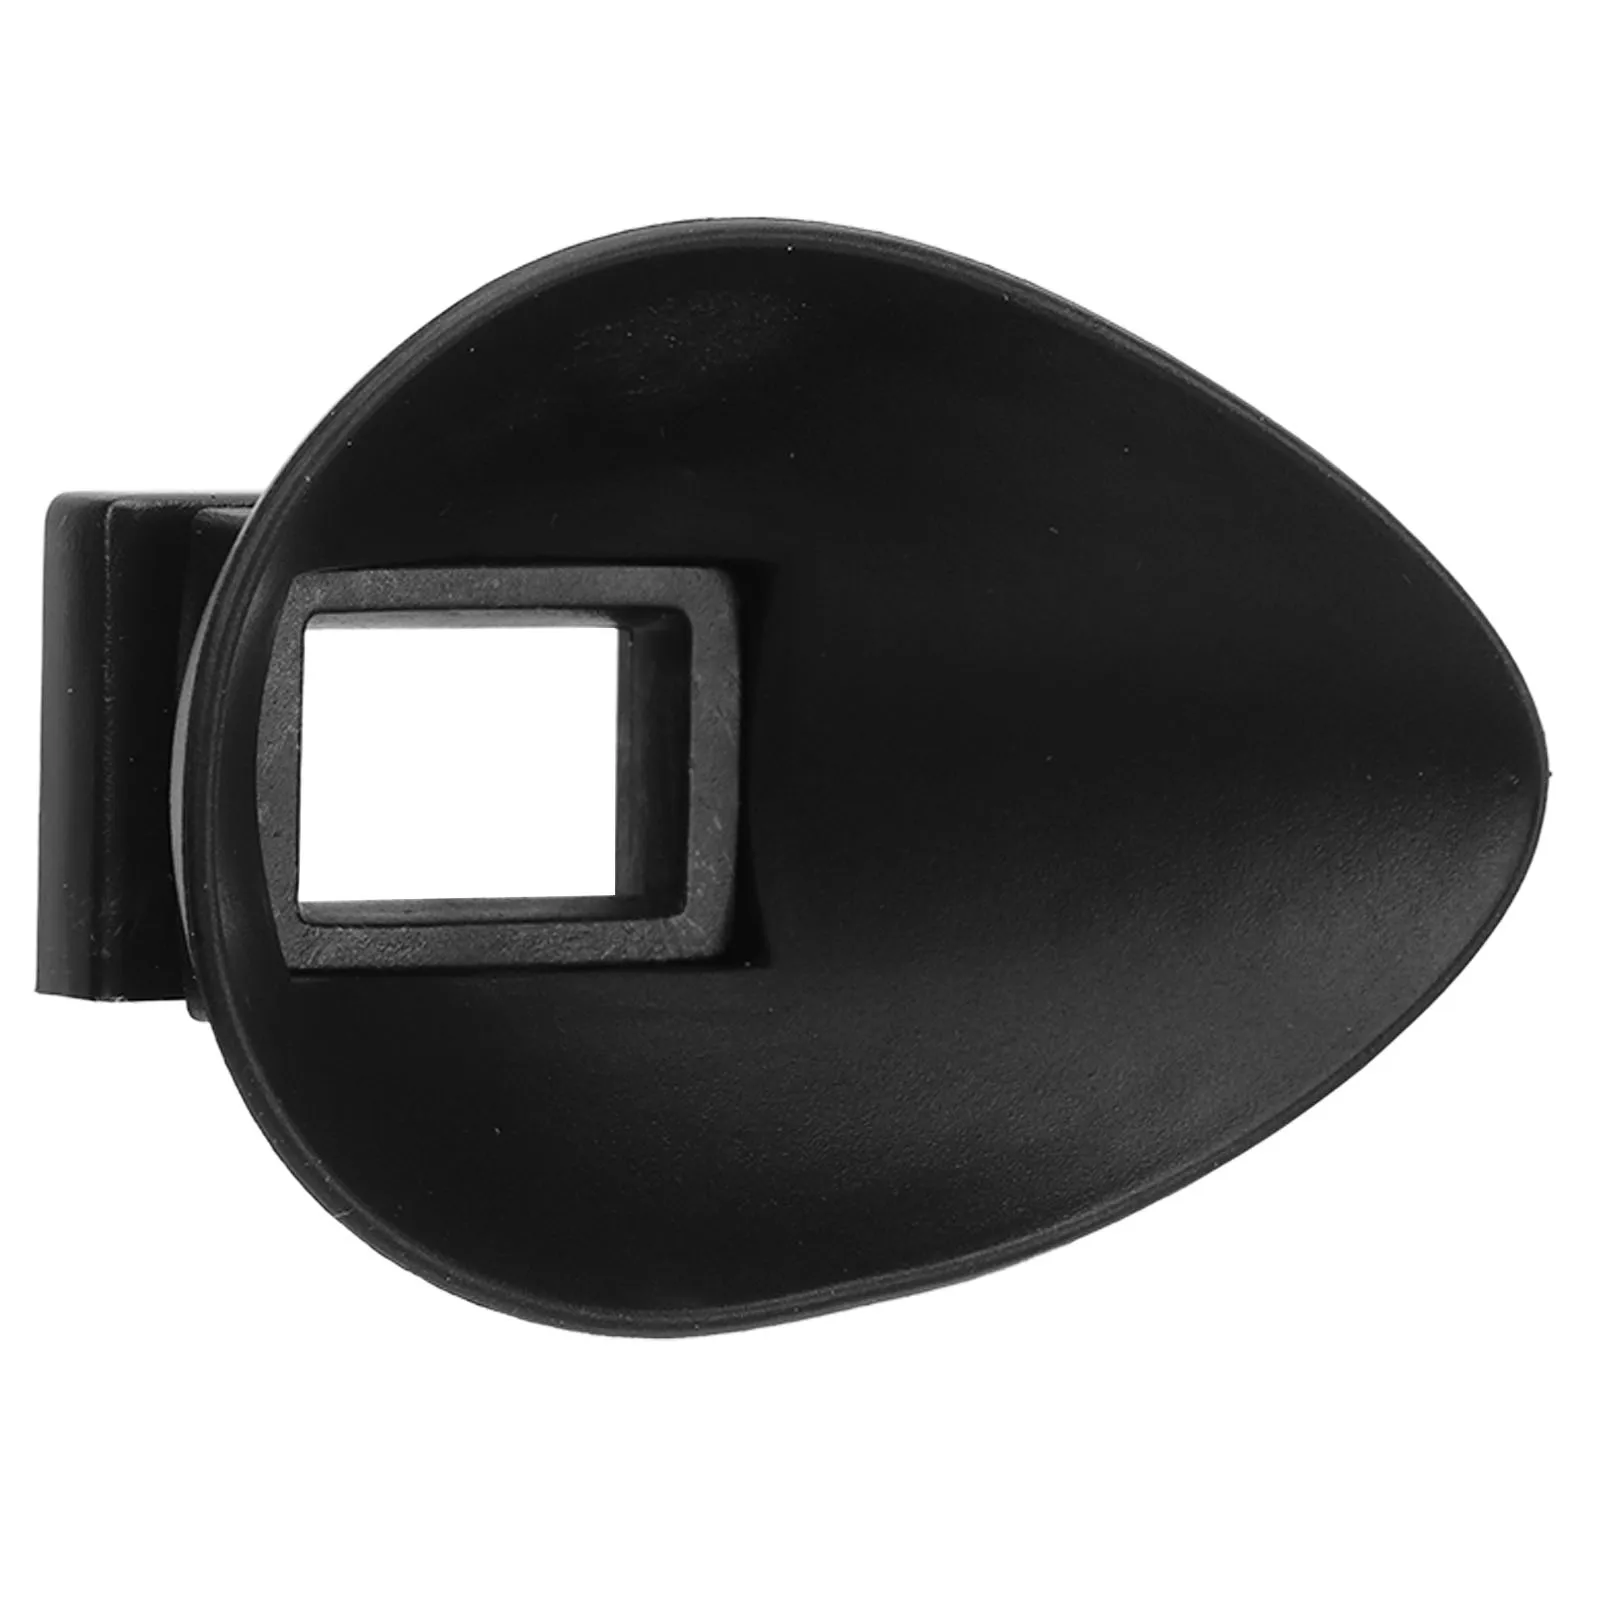 Наглазник Камеры Козырек для век 22 мм Ударопрочный Светостойкий Резиновый Козырек для глаз Подходит для Nikon D750 D610 D600 D90 D80 D70 D7200